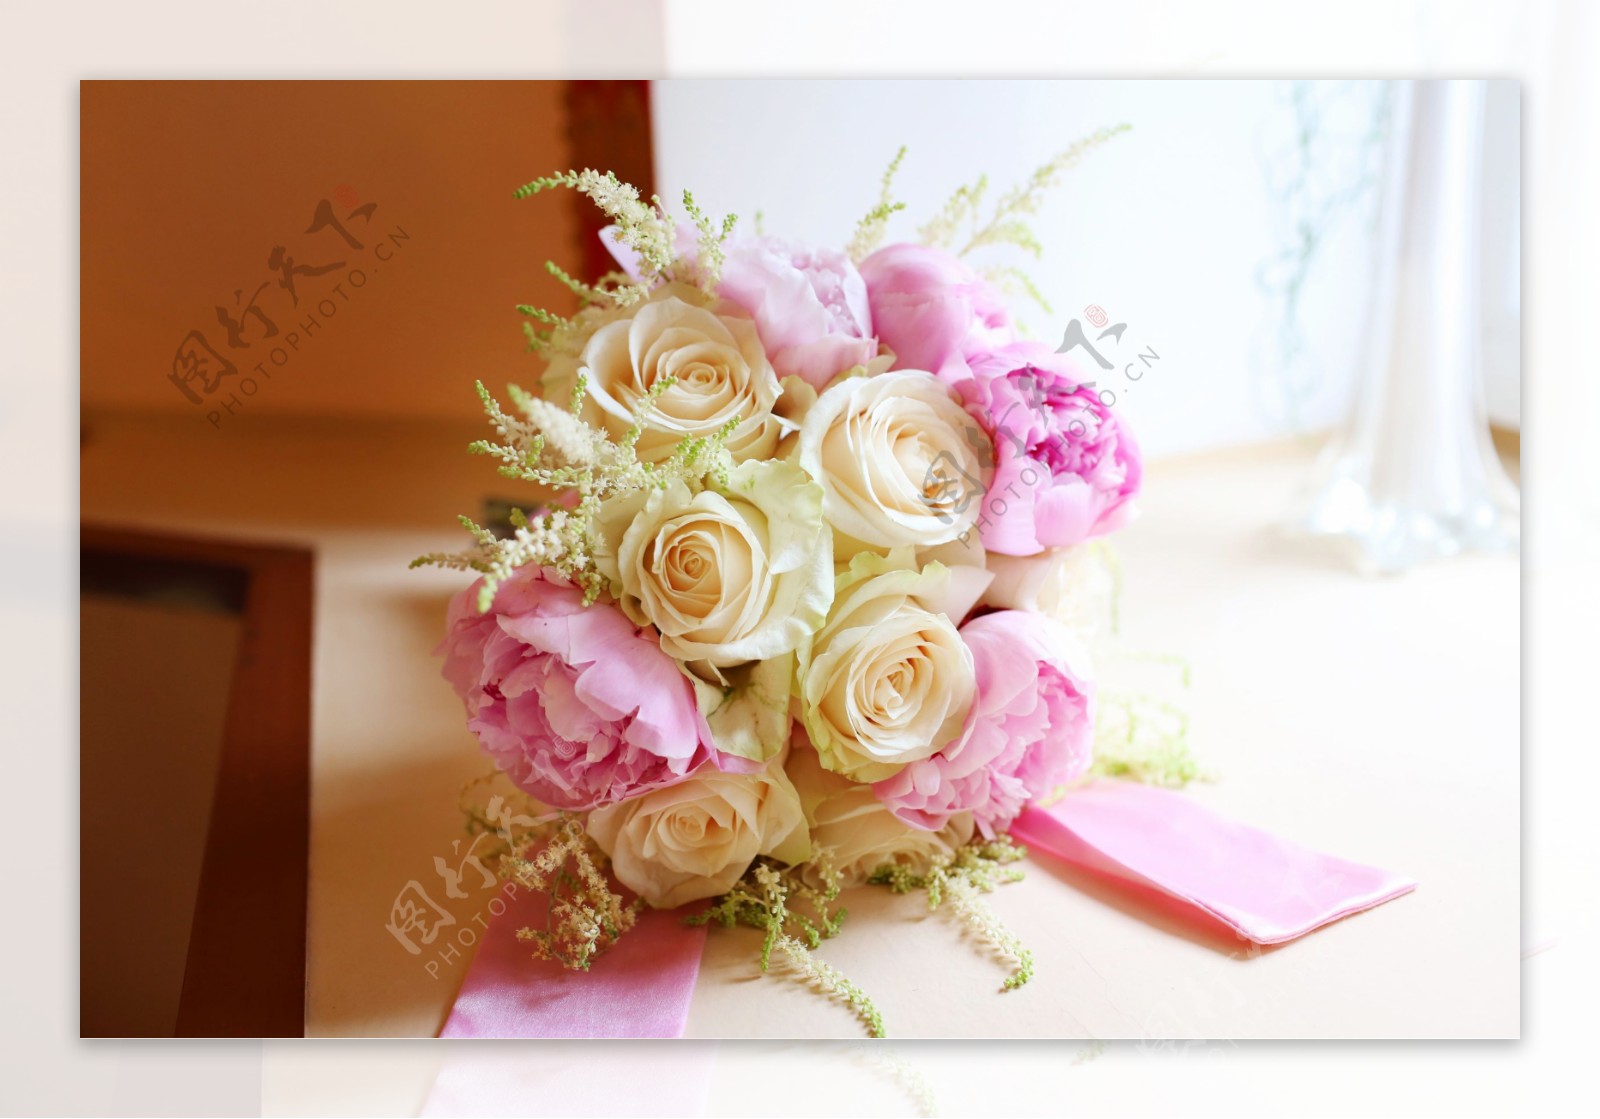 白色与粉色花朵搭配的捧花